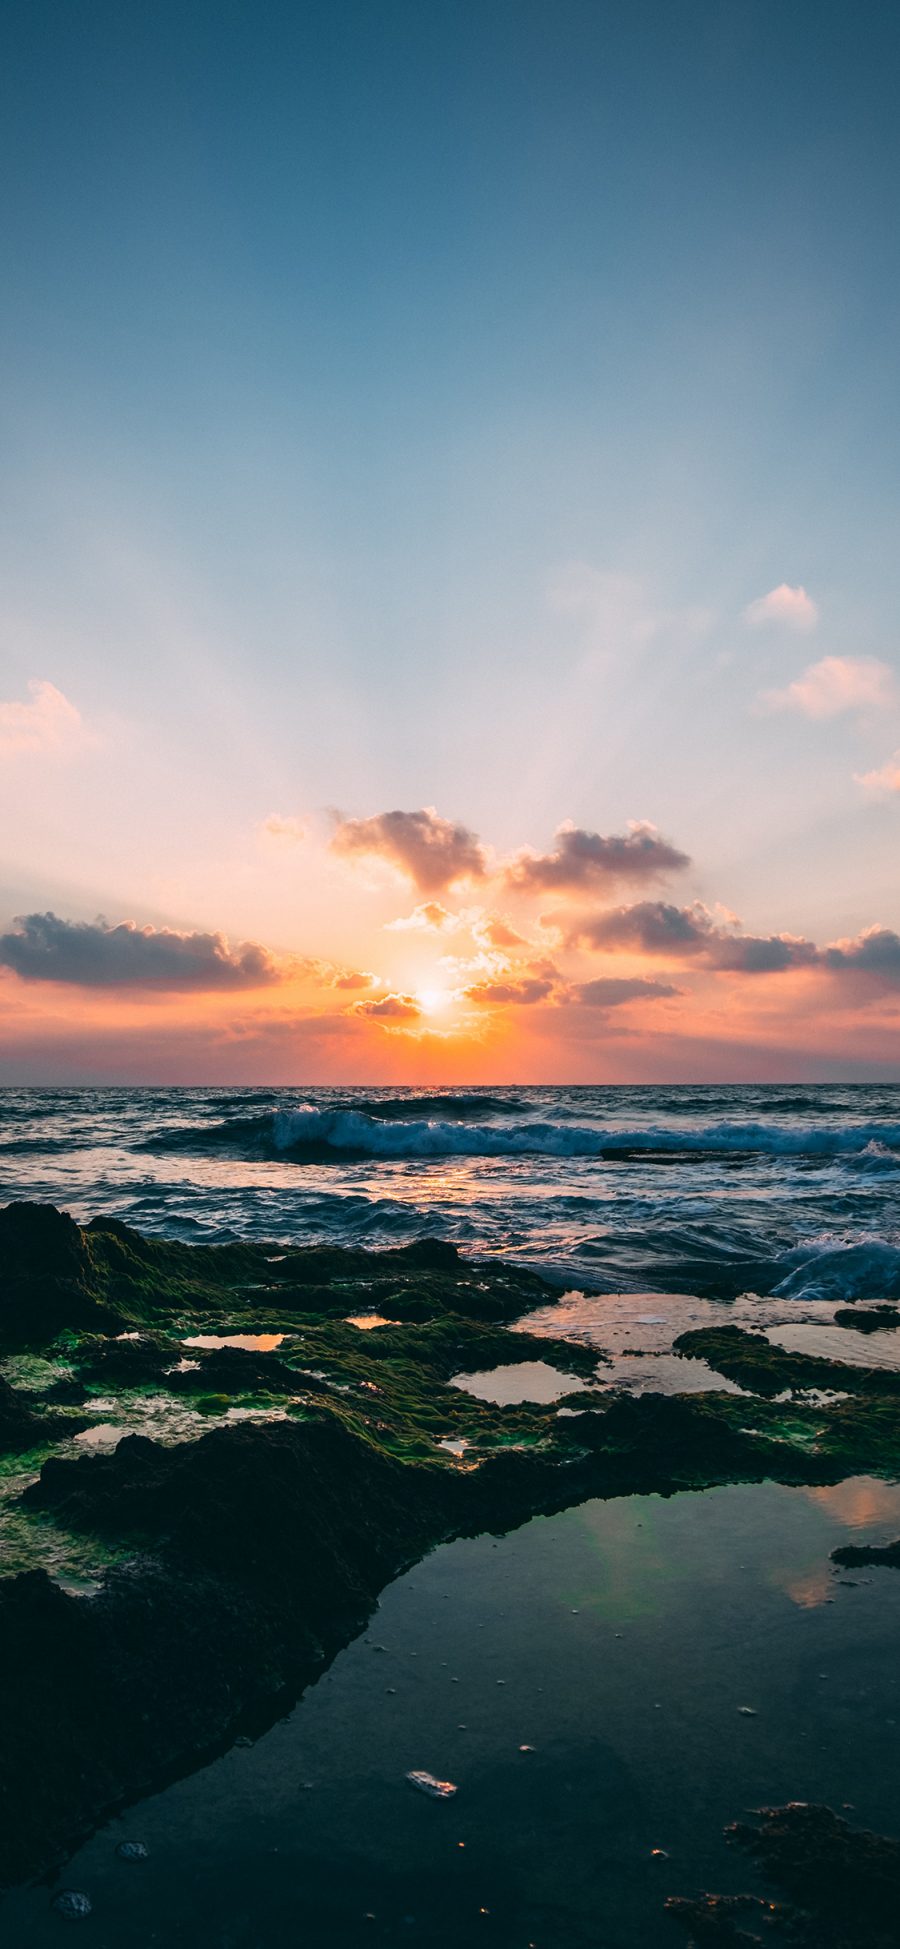 [2436×1125]夕阳 阳光 大海 海浪 苹果手机壁纸图片